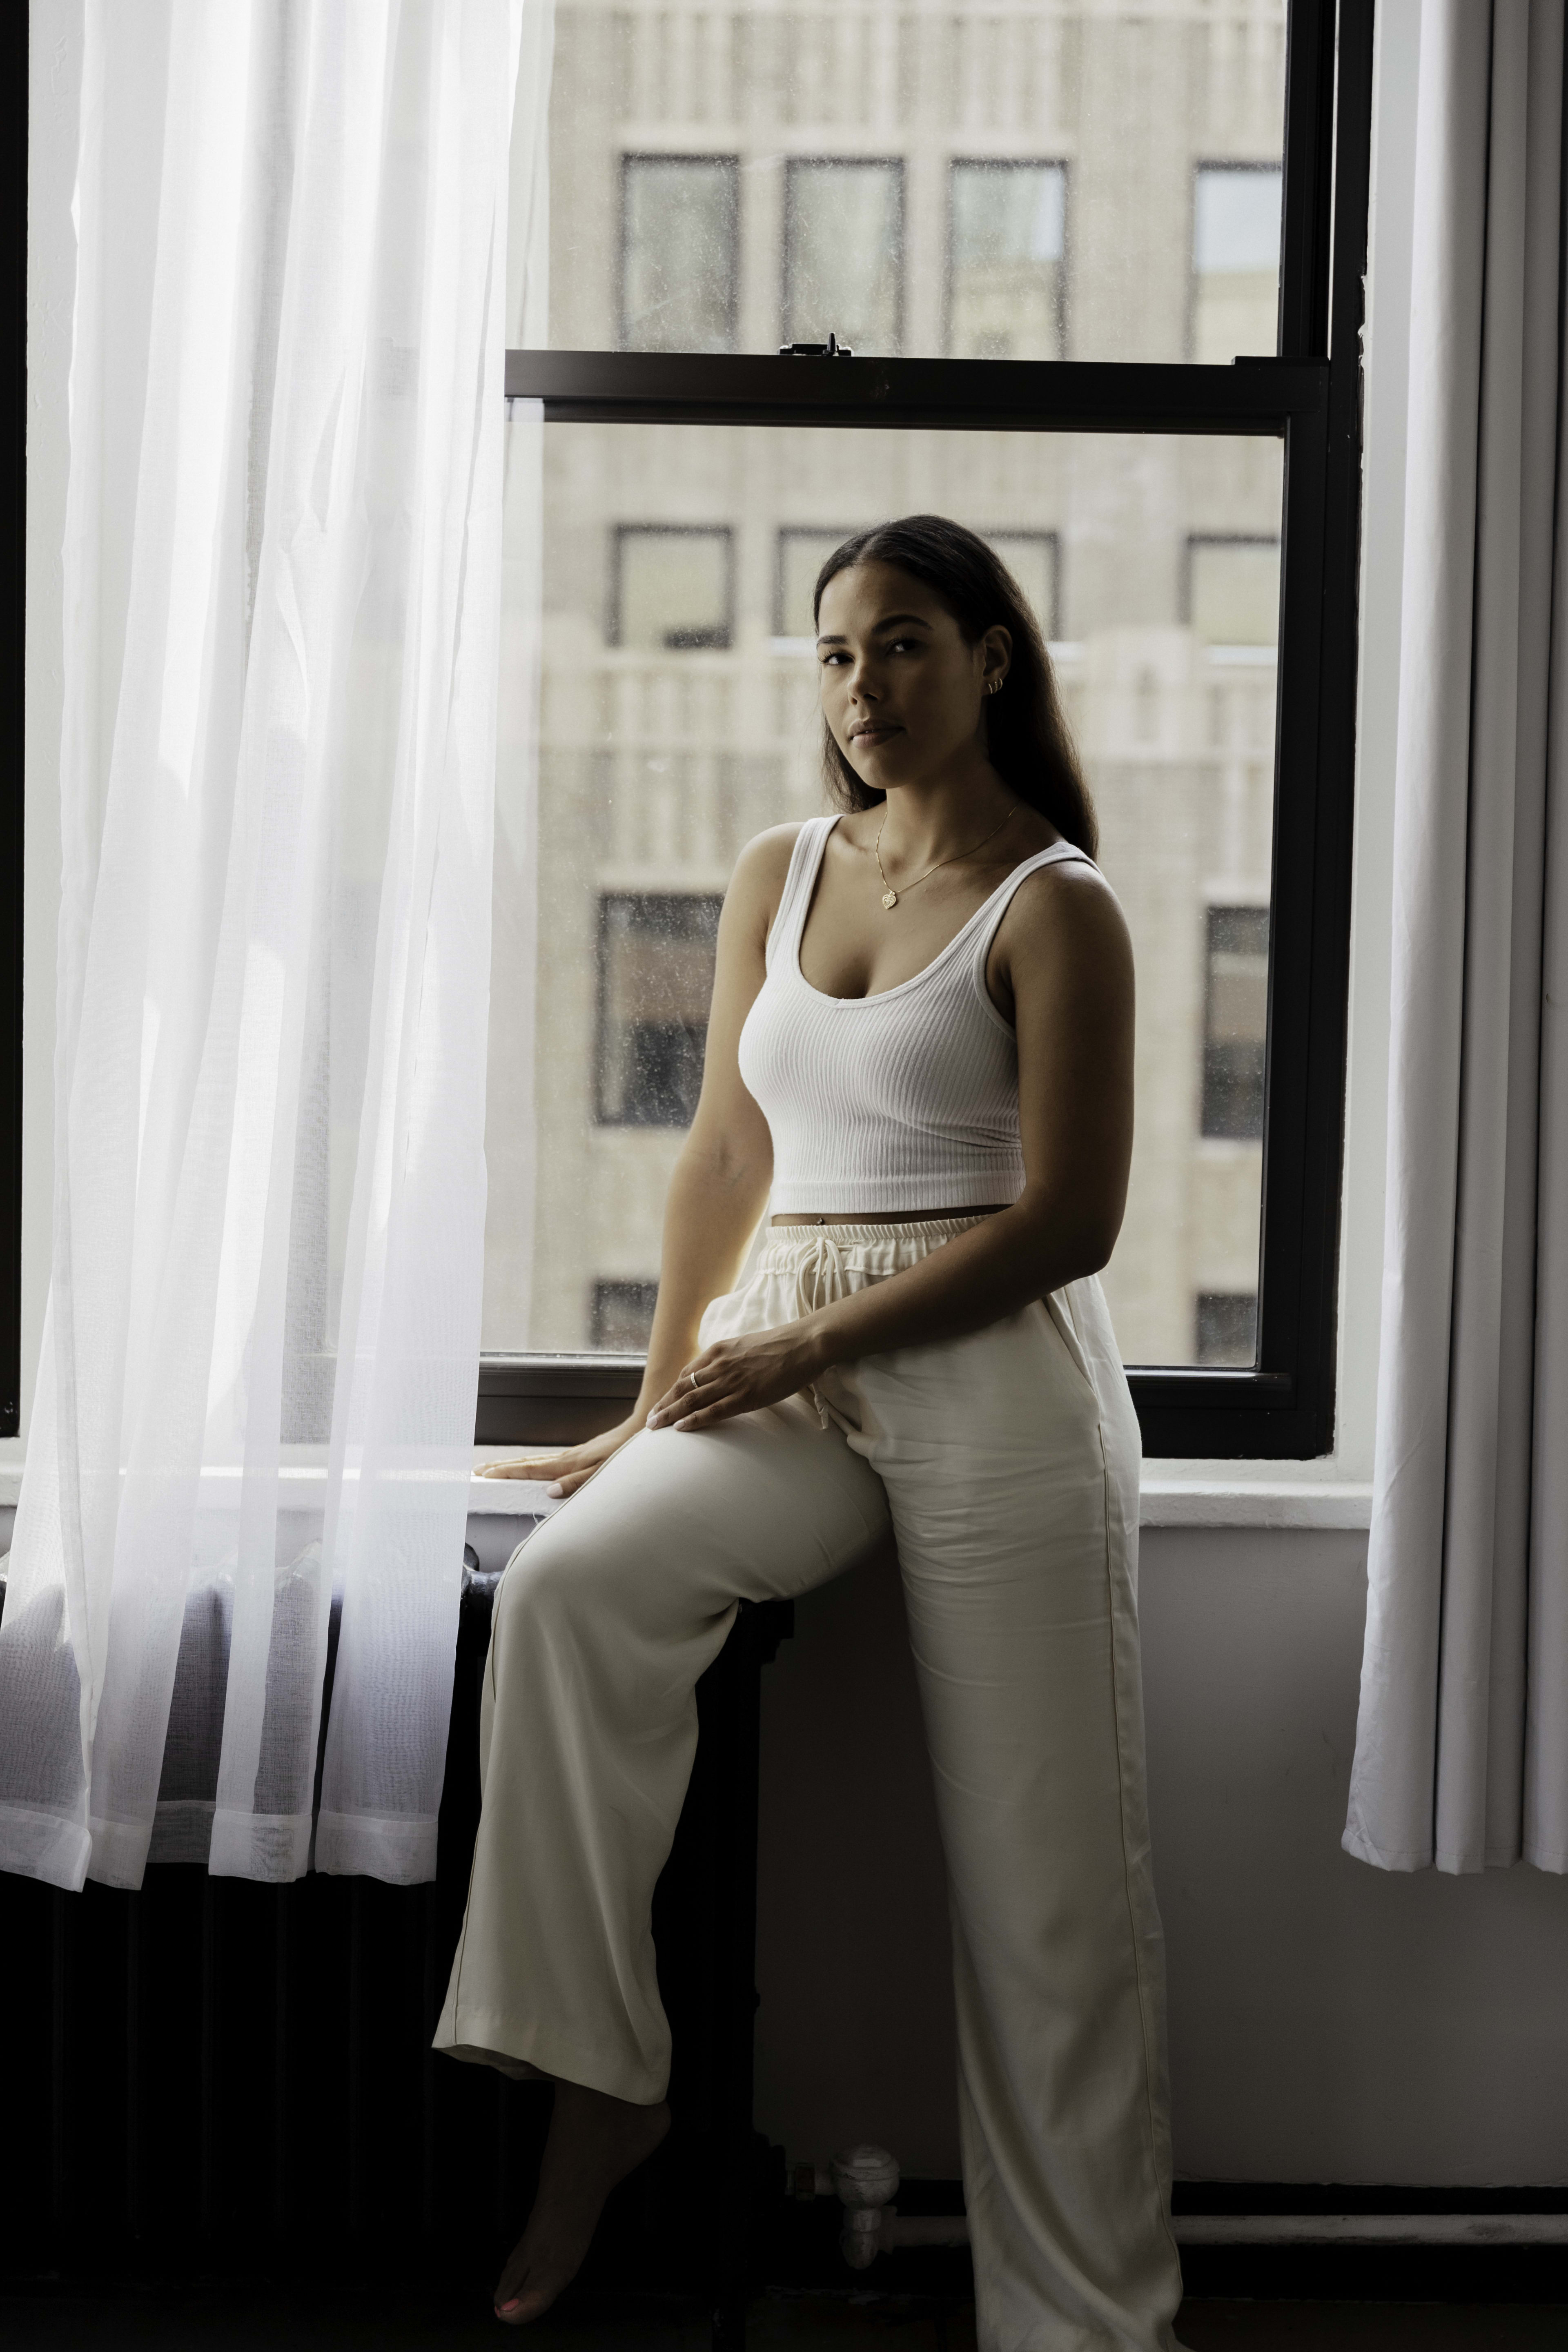 Un shooting photo de mode mettant en scène une femme sur un rebord de fenêtre blanc minimaliste.